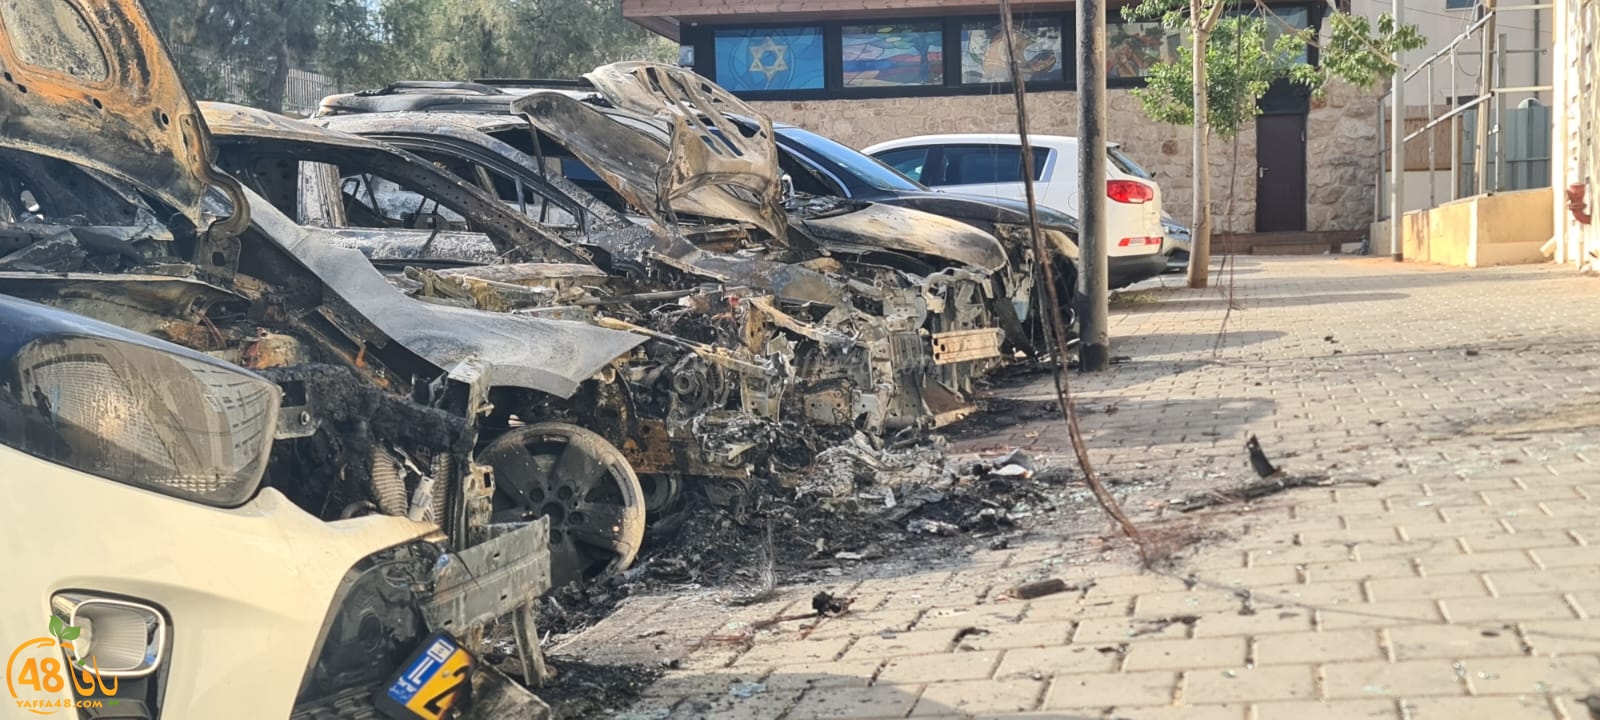 فجر اليوم: احراق 5 سيارات في حي العجمي بيافا 